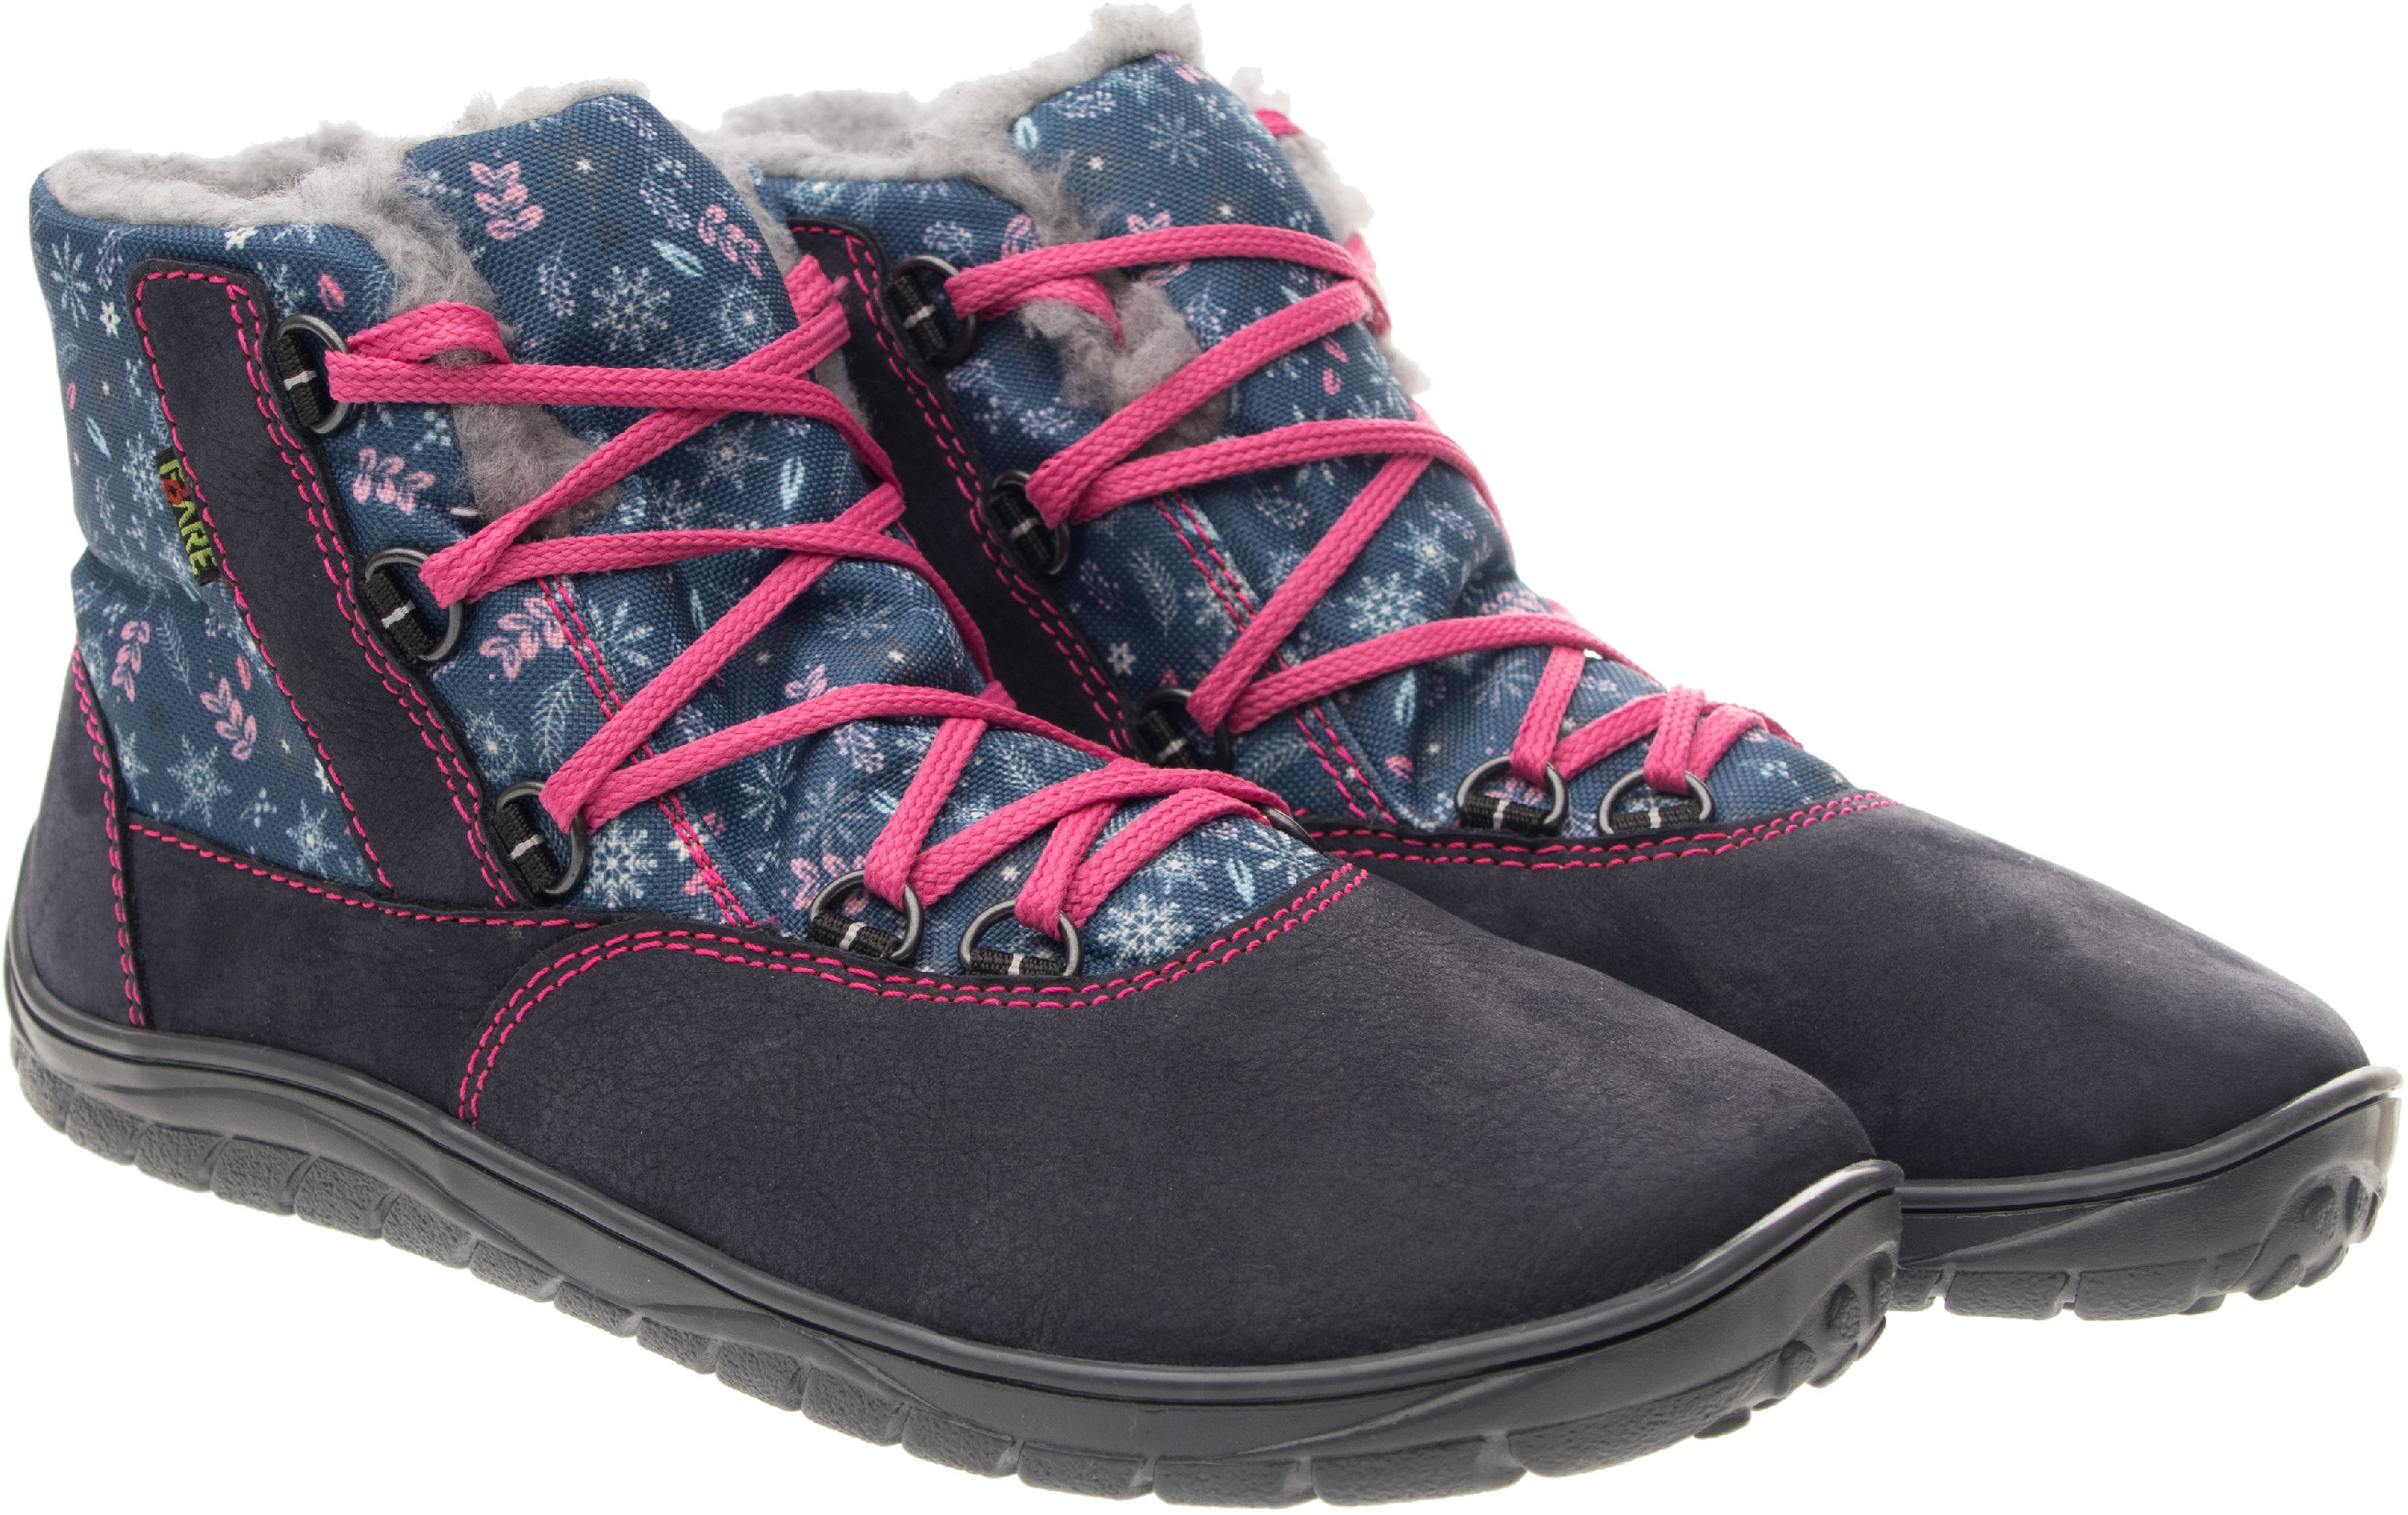 Fare Bare unisex zimní nepromokavé boty B5643201 Velikost obuvi: 34